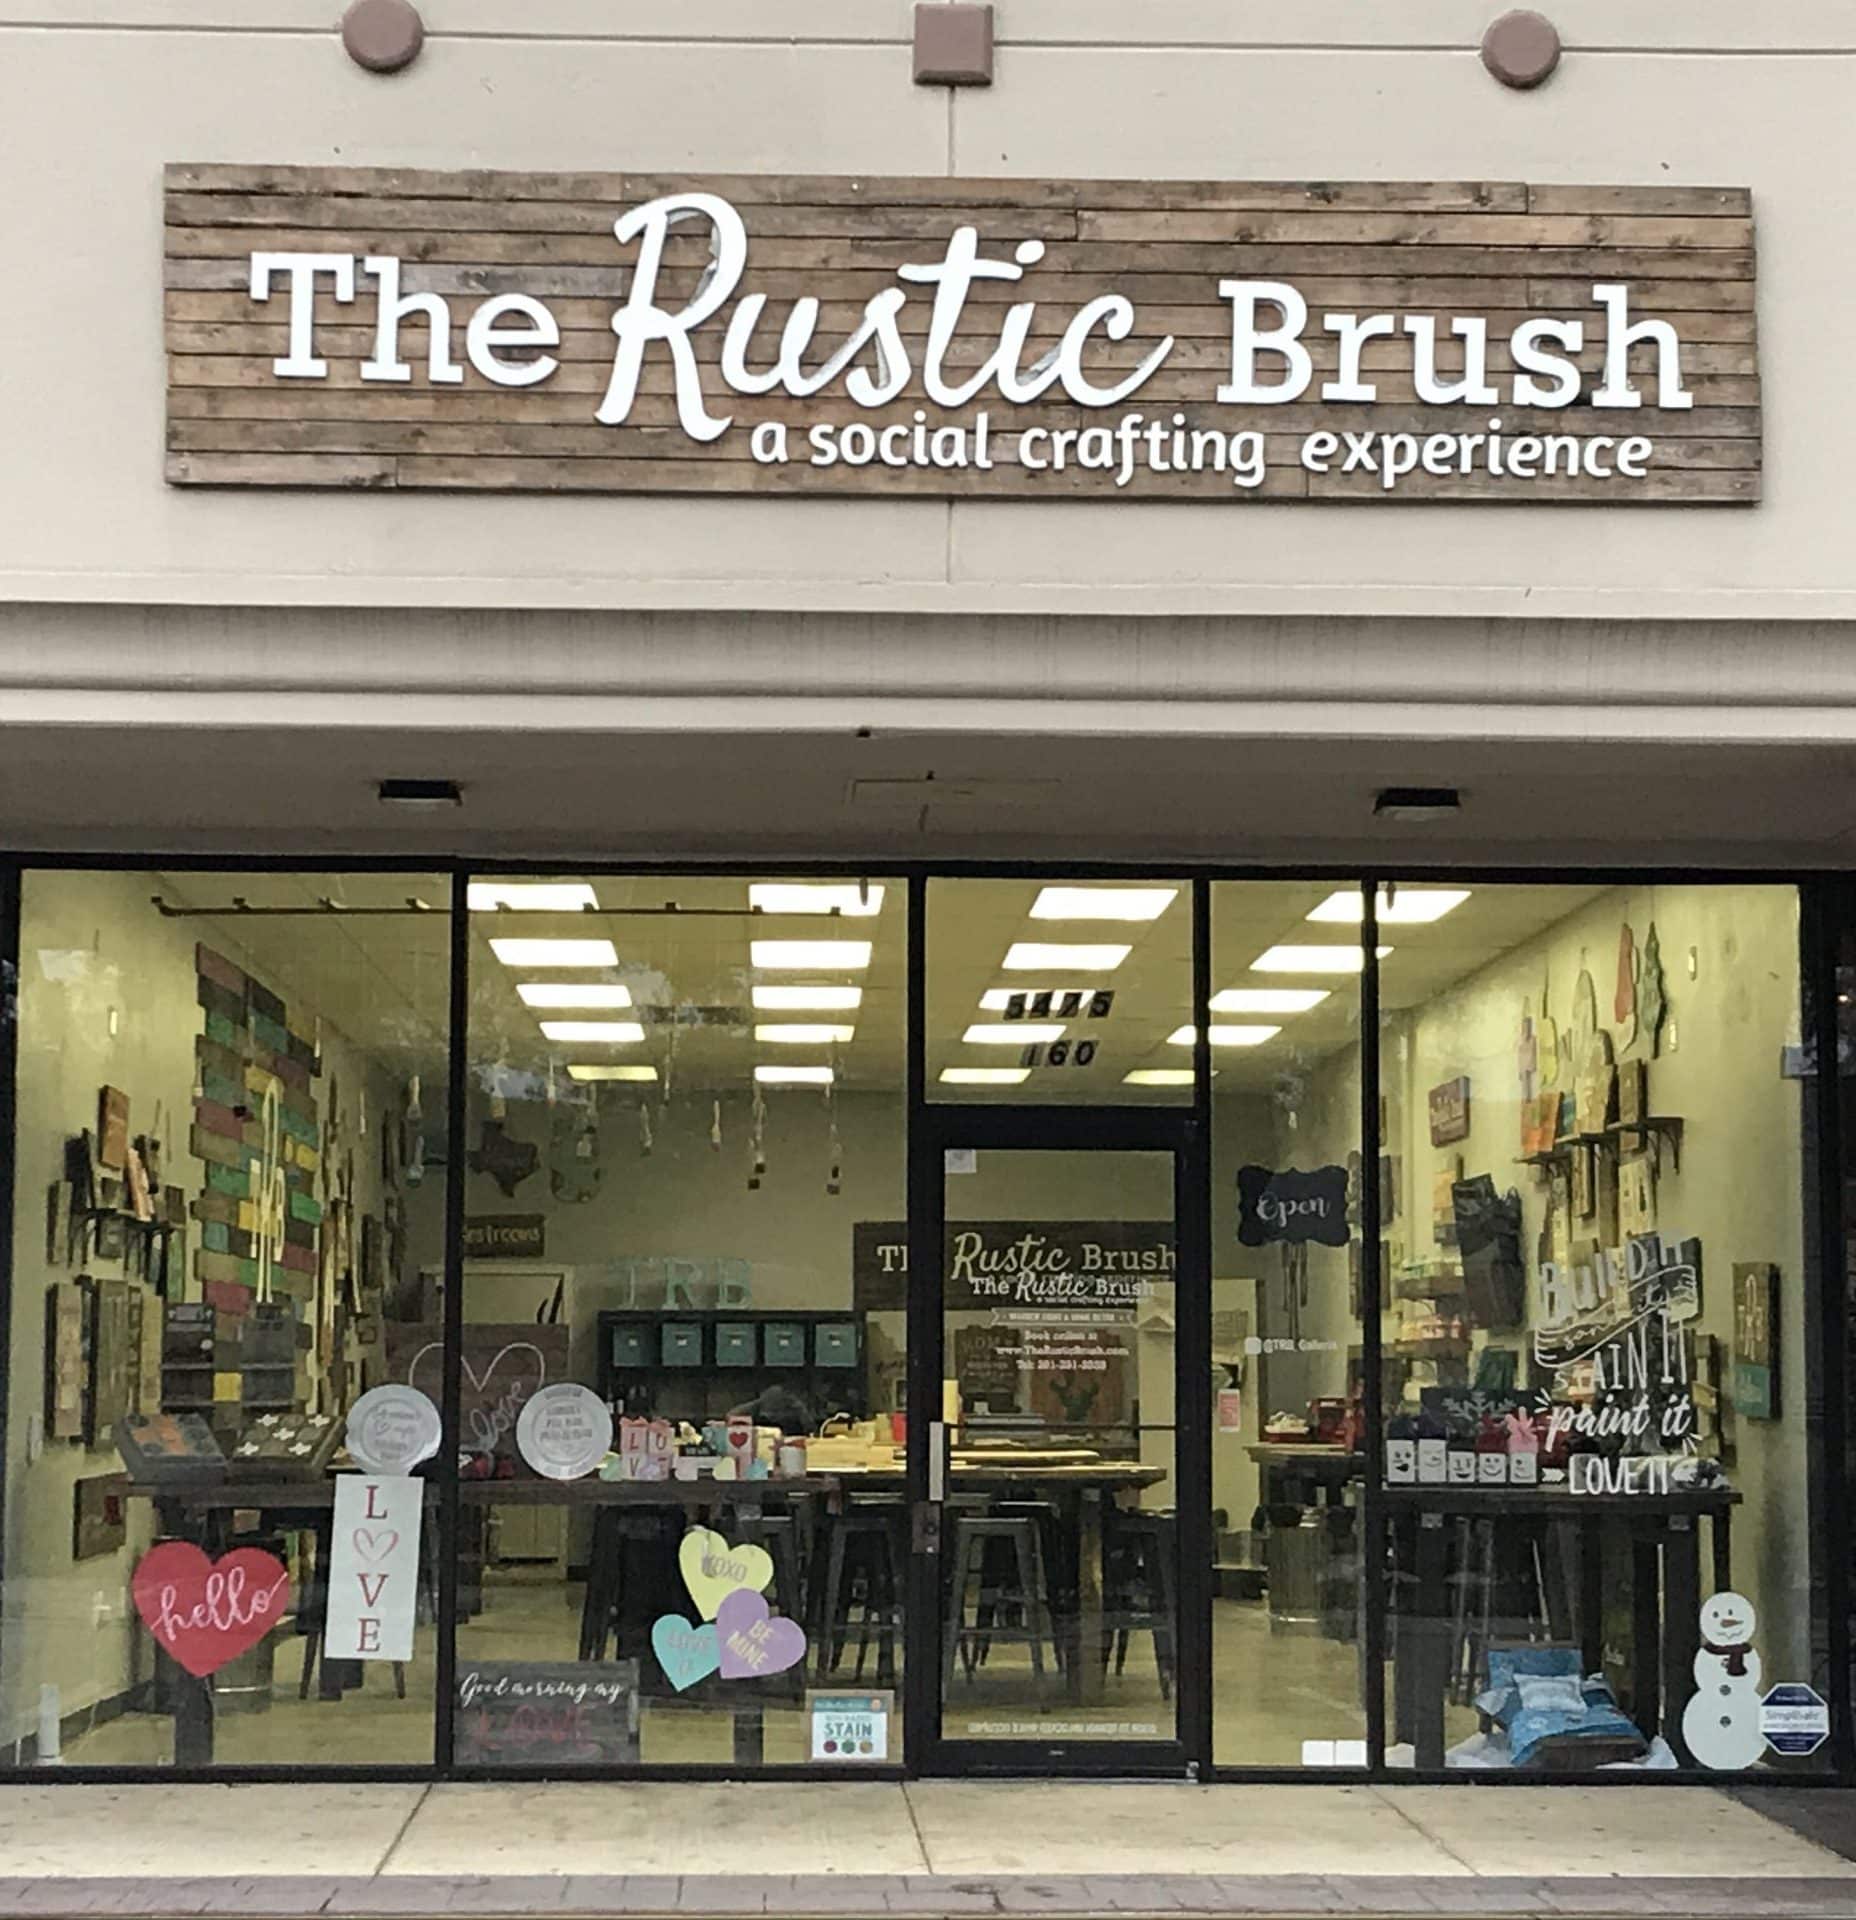 The Rustic Brush in Lubbock